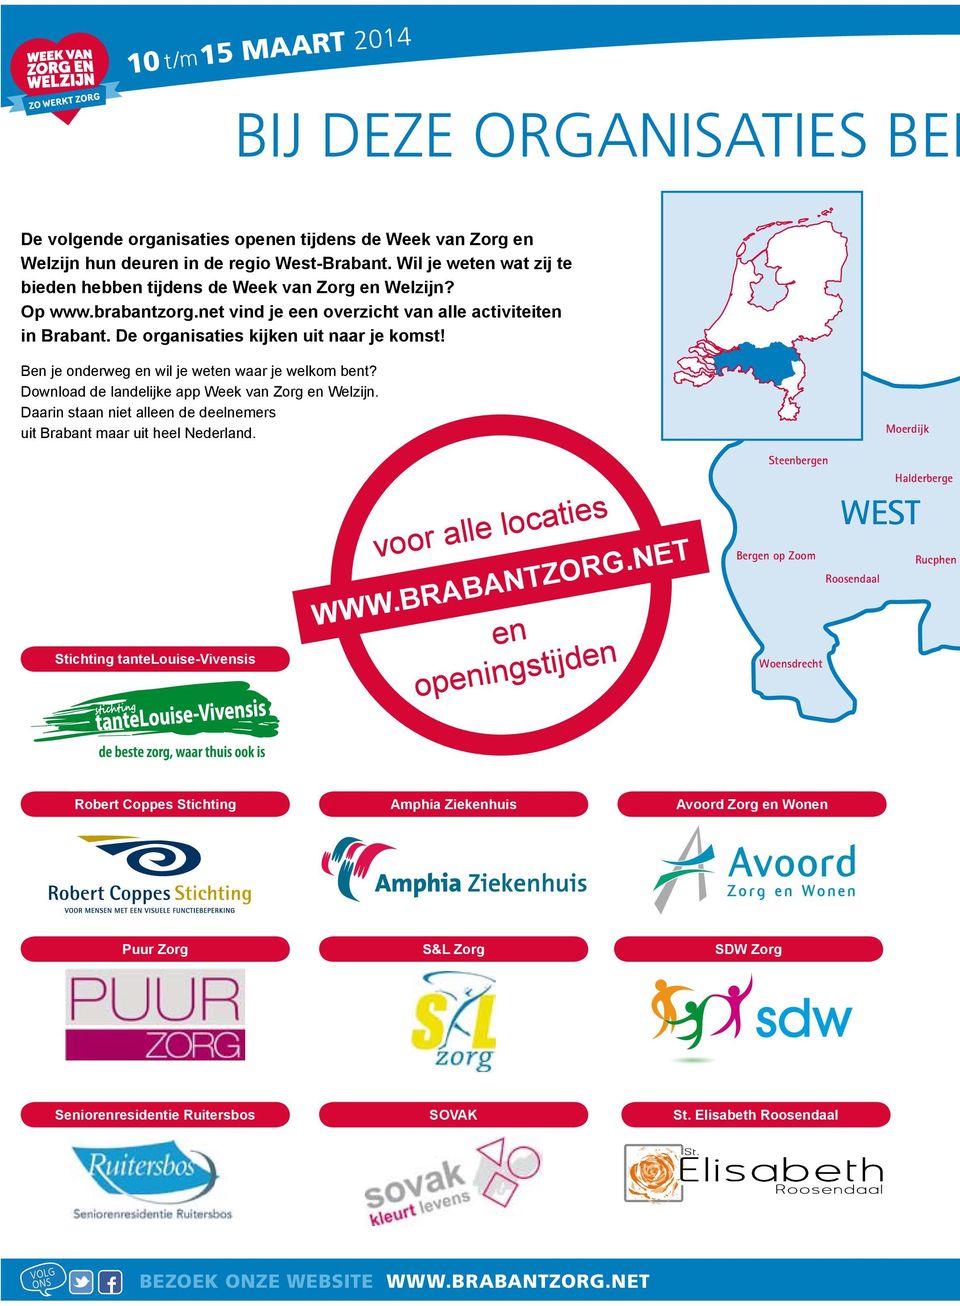 Ben je onderweg en wil je weten waar je welkom bent? Download de landelijke app Week van Zorg en Welzijn. Daarin staan niet alleen de deelnemers uit Brabant maar uit heel Nederland.